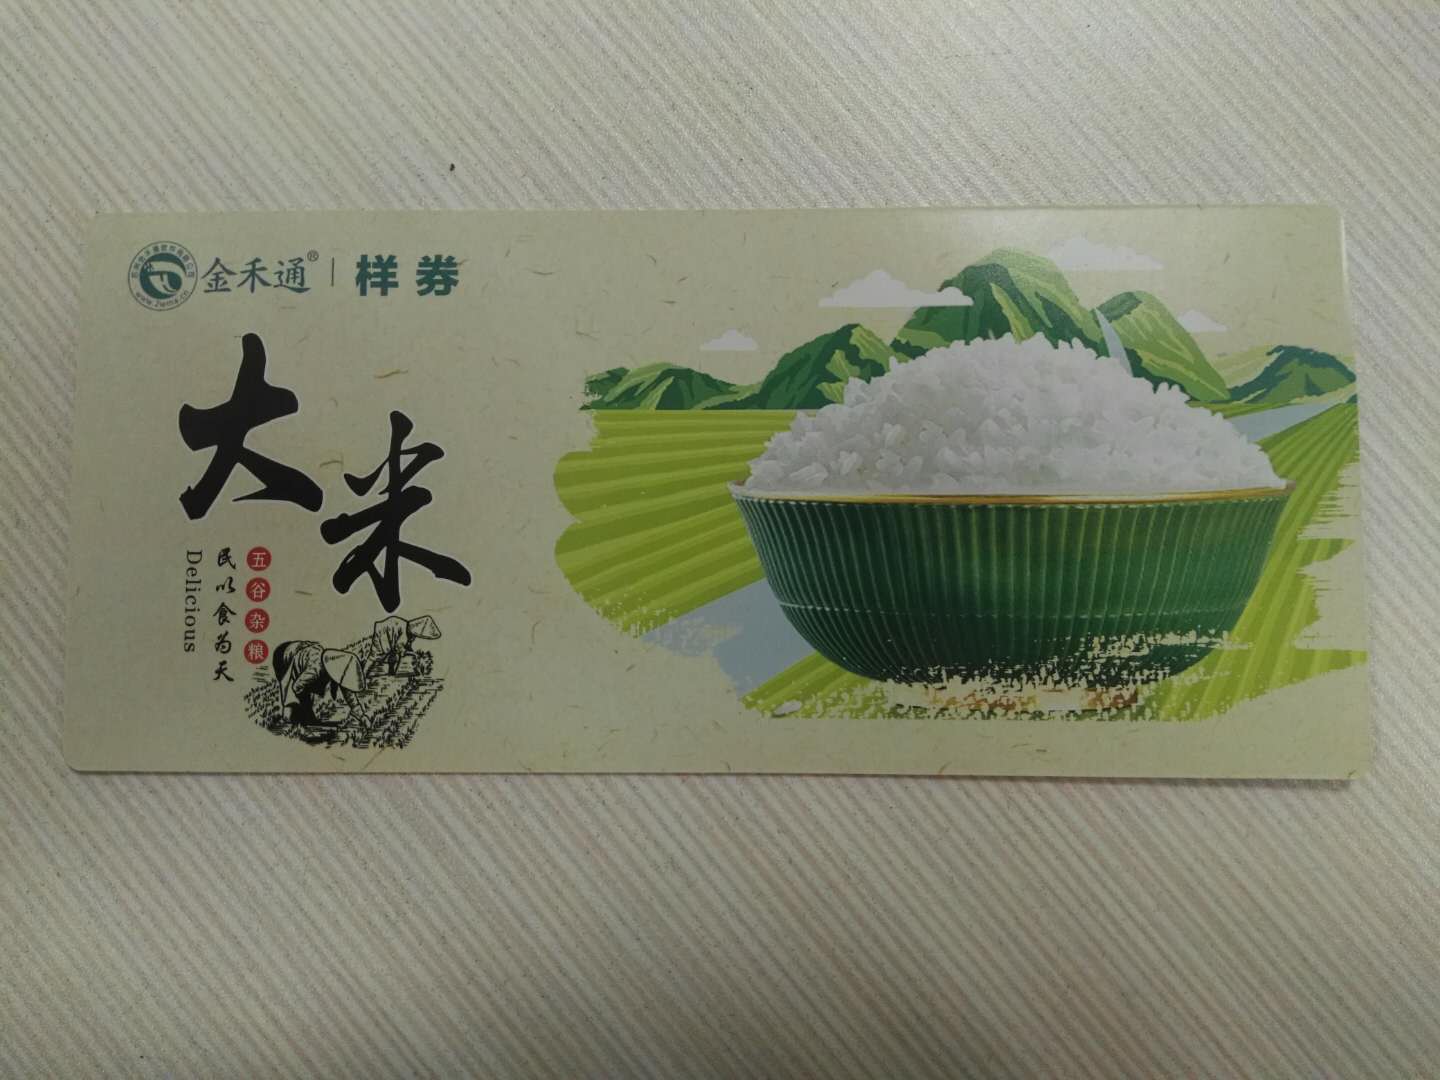 金禾通海鲜大米提货系统  印刷二维码自助提货厂家